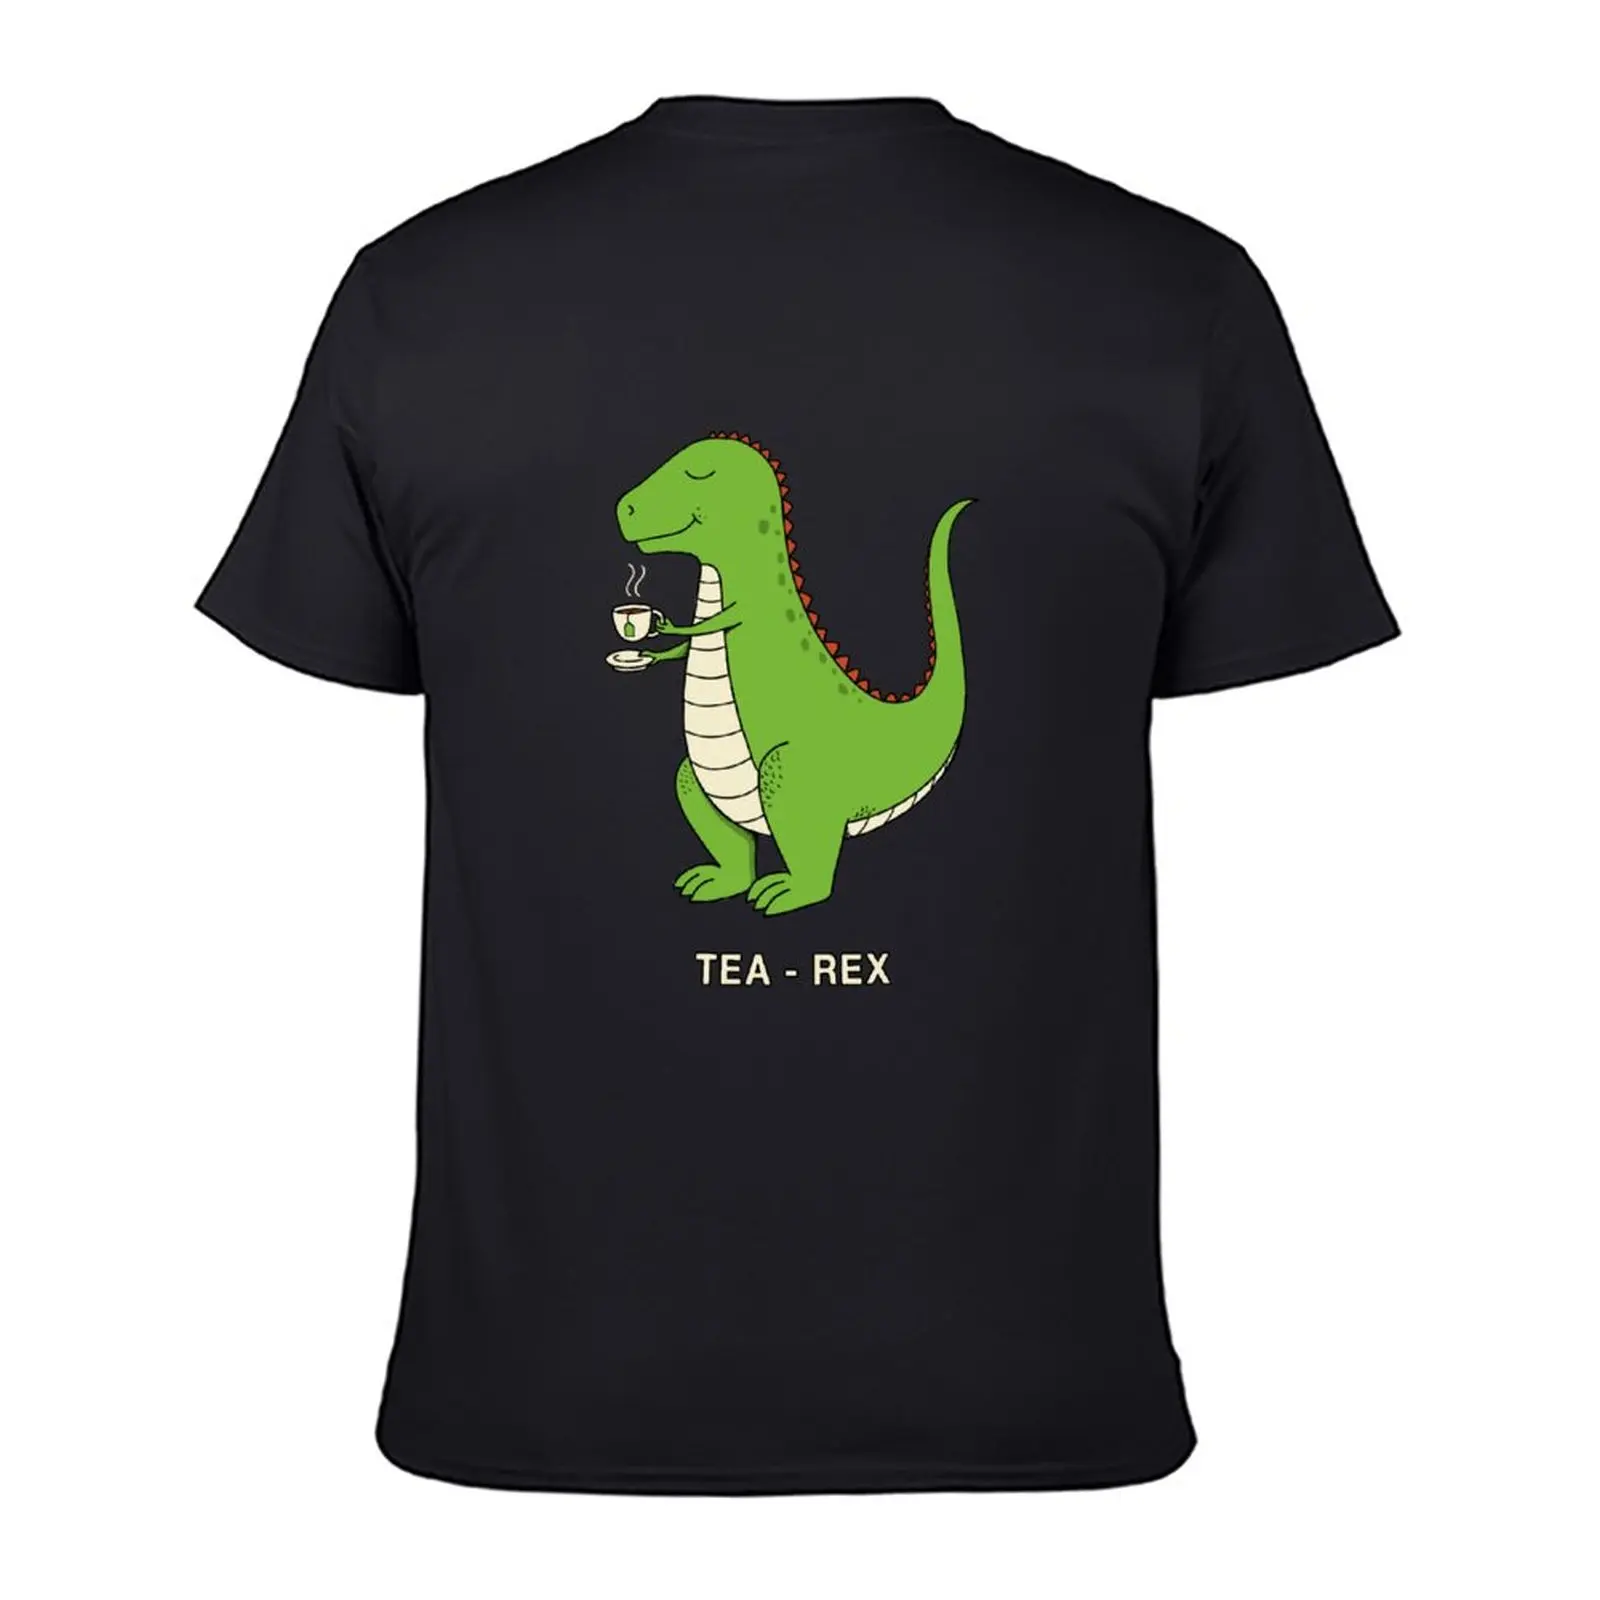 Новая футболка Tea Rex, милая одежда, футболки больших размеров, мужские высокие футболки 2